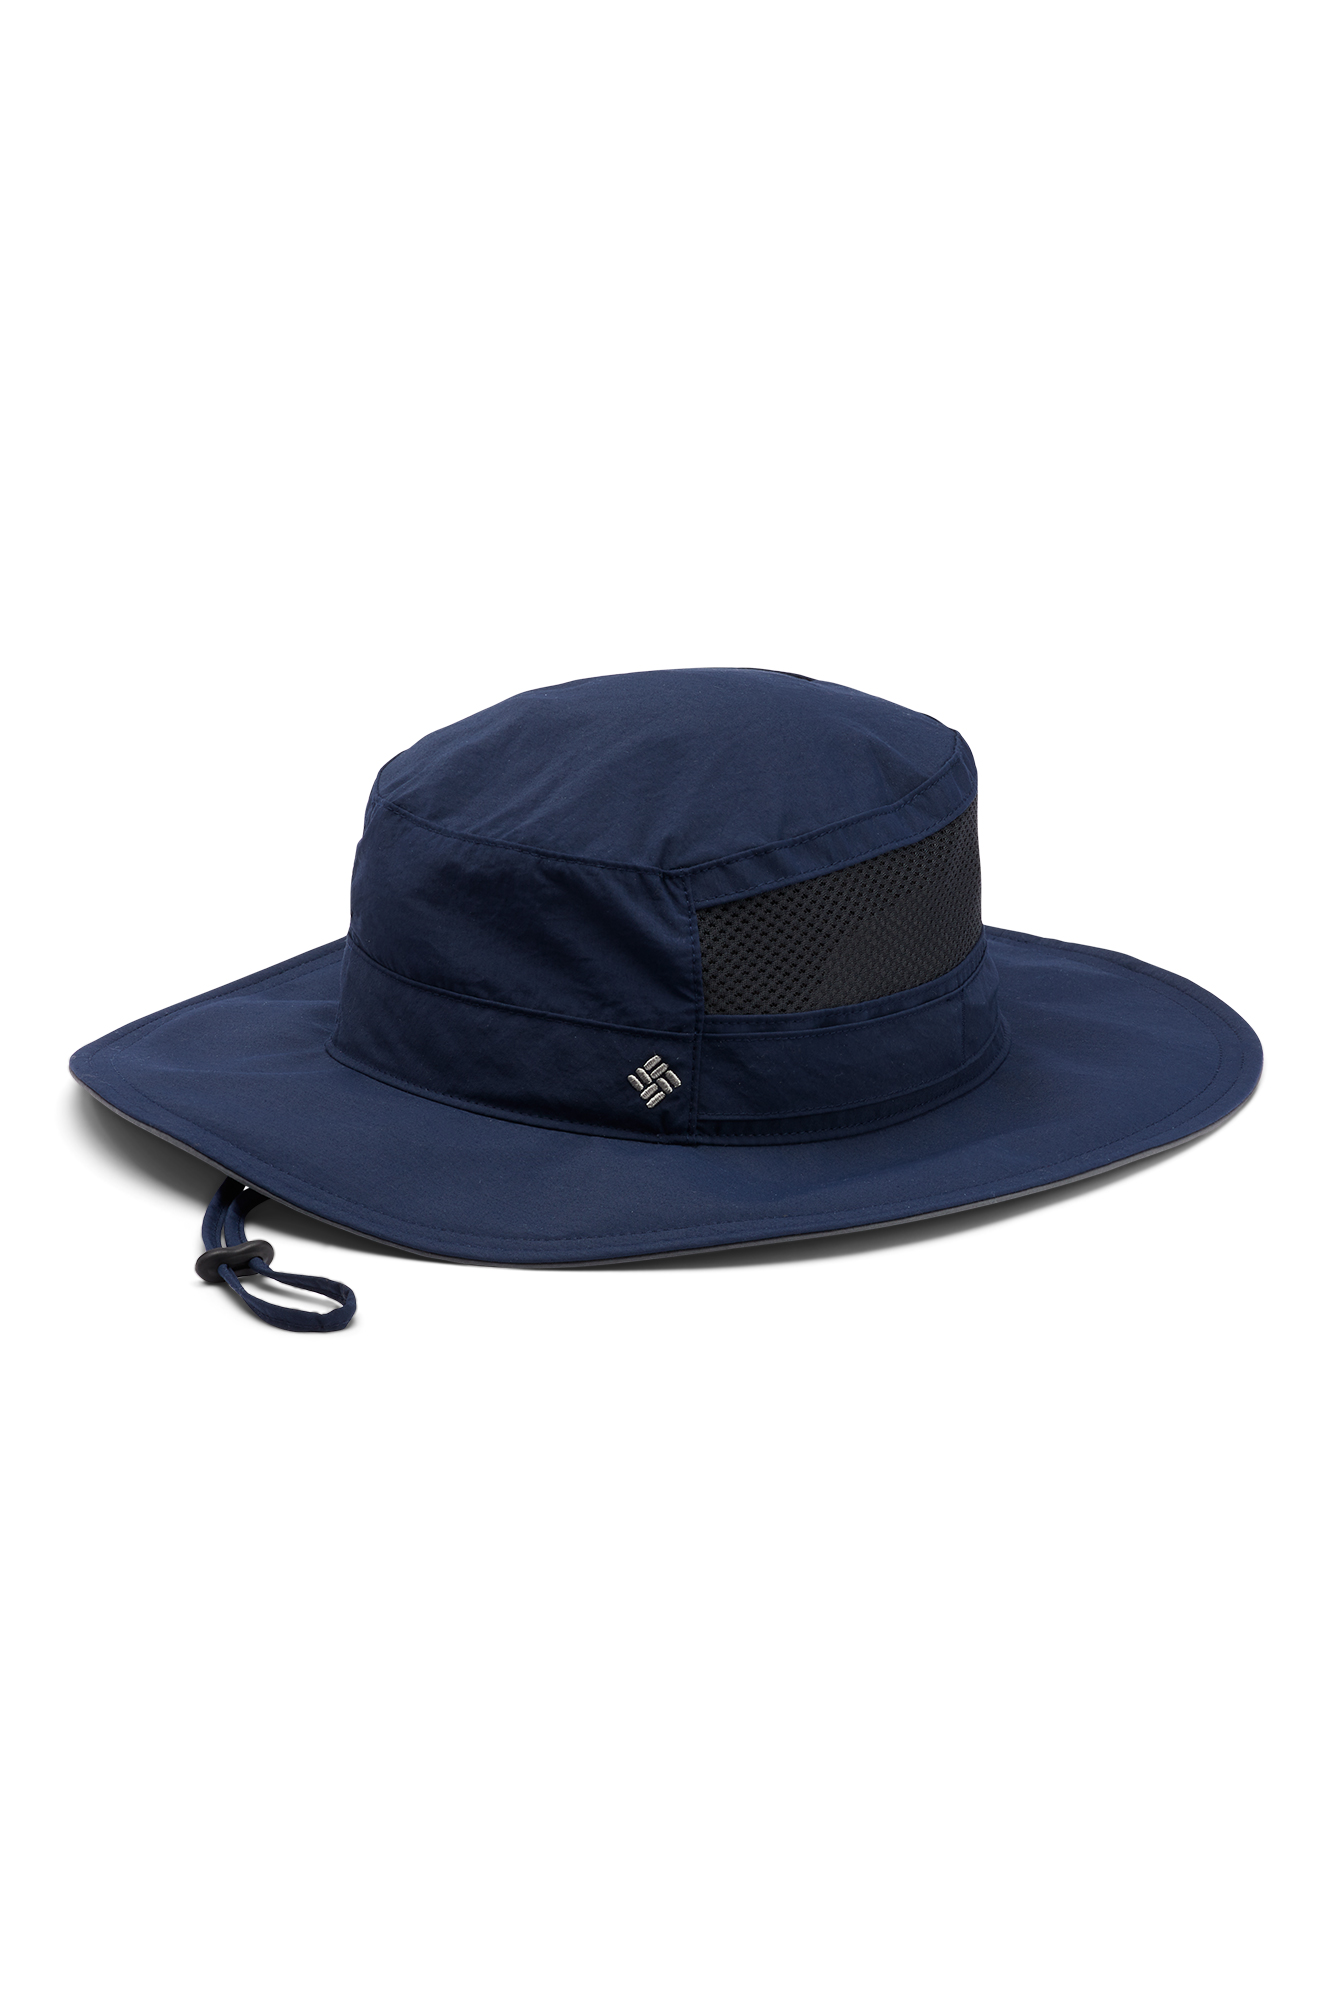 Columbia Bora Bora hat™, Men's accessories